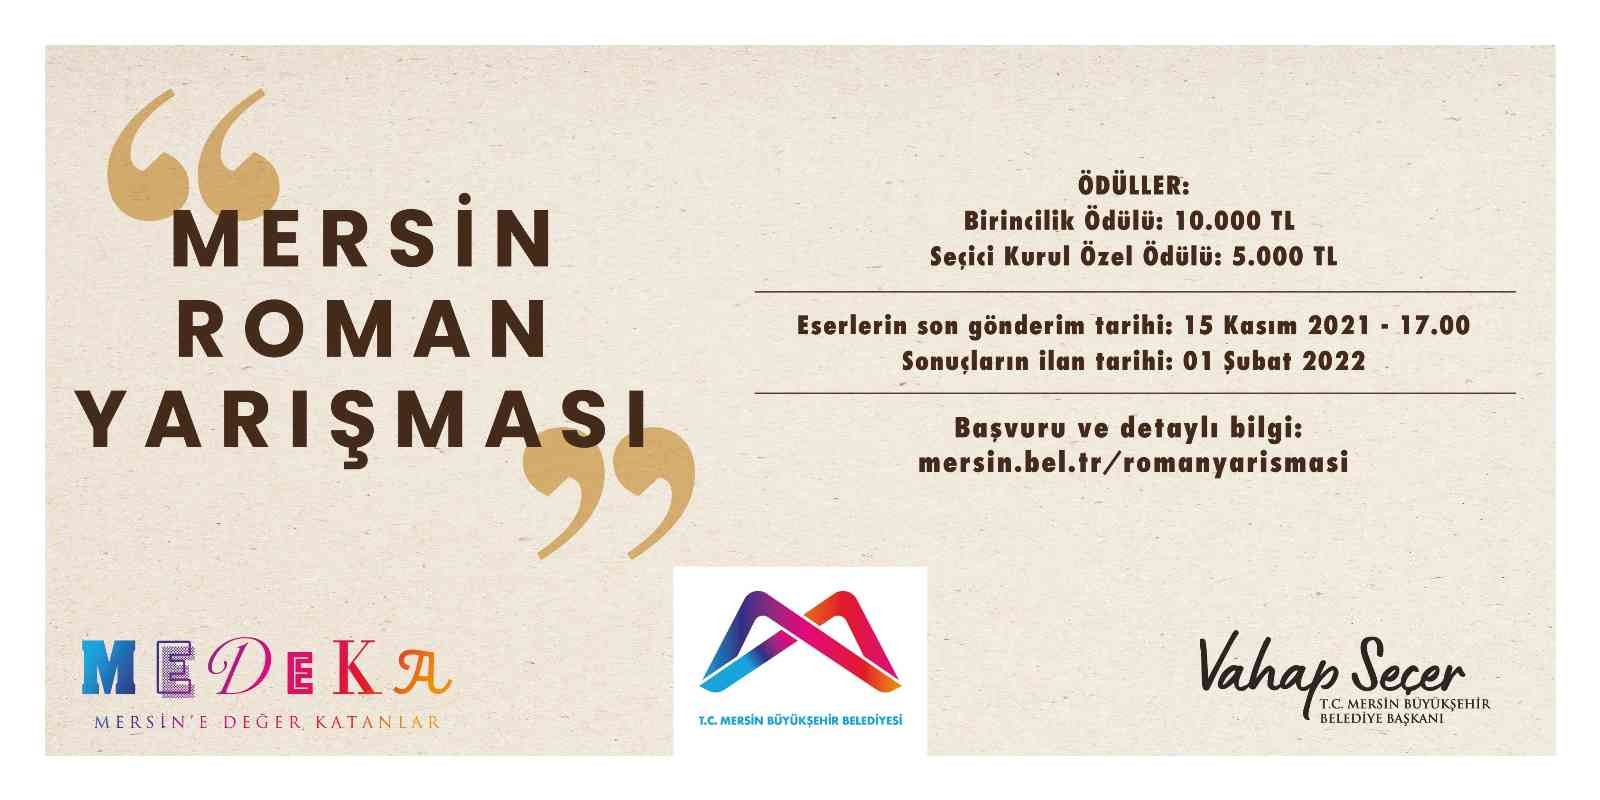 Mersin Büyükşehir Belediyesi’nden ödüllü roman ve fotoğraf yarışması #mersin